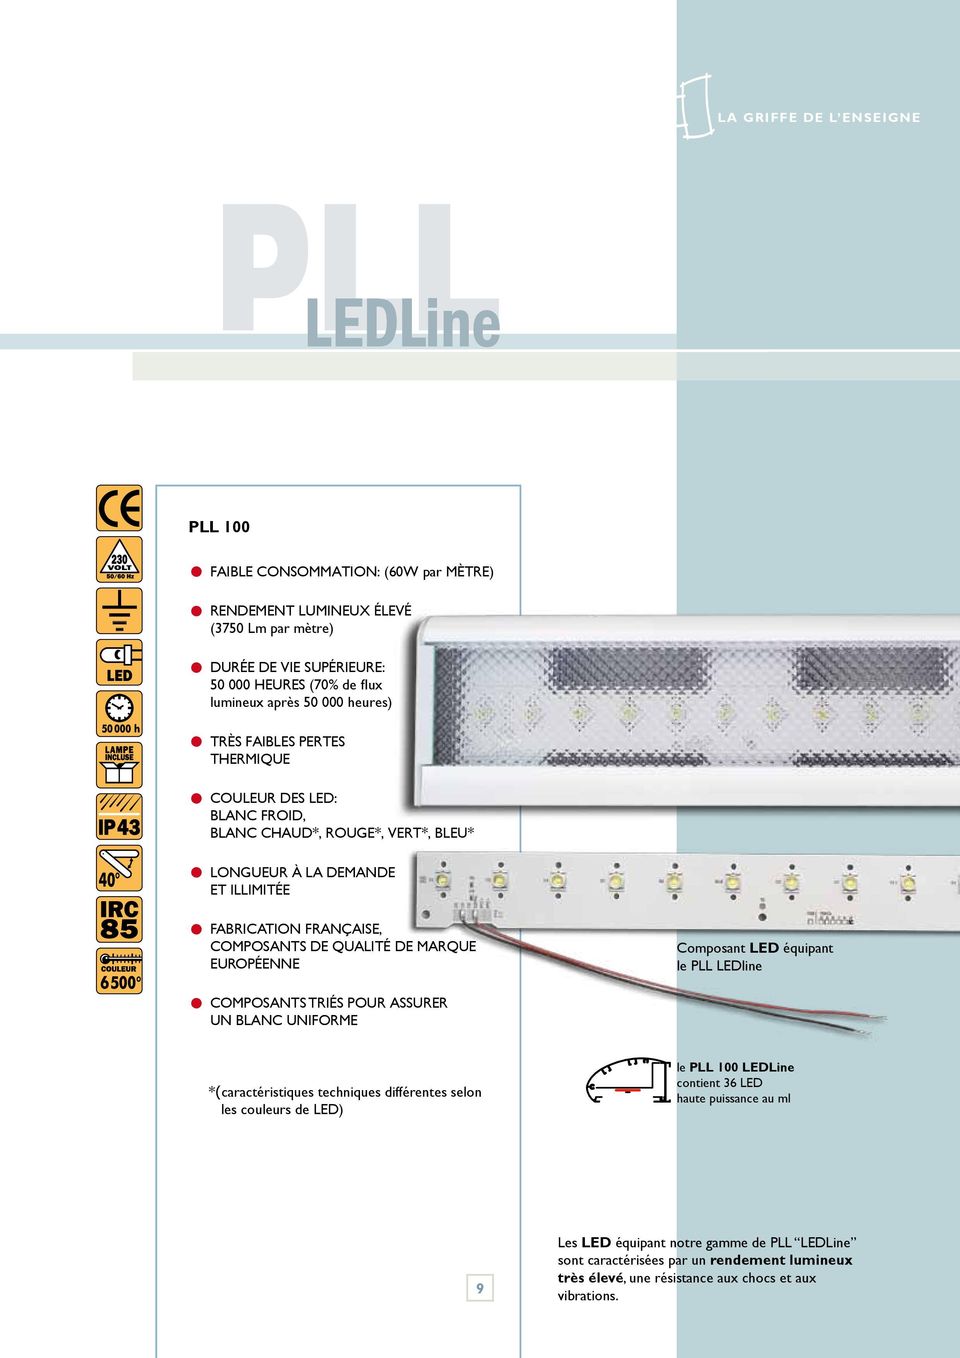 qualité de marque européenne composants TRIÉS POUR ASSURER UN BLANC UNIFORME Composant LED équipant le PLL LEDline *(caractéristiques techniques différentes selon les couleurs de LED) le PLL